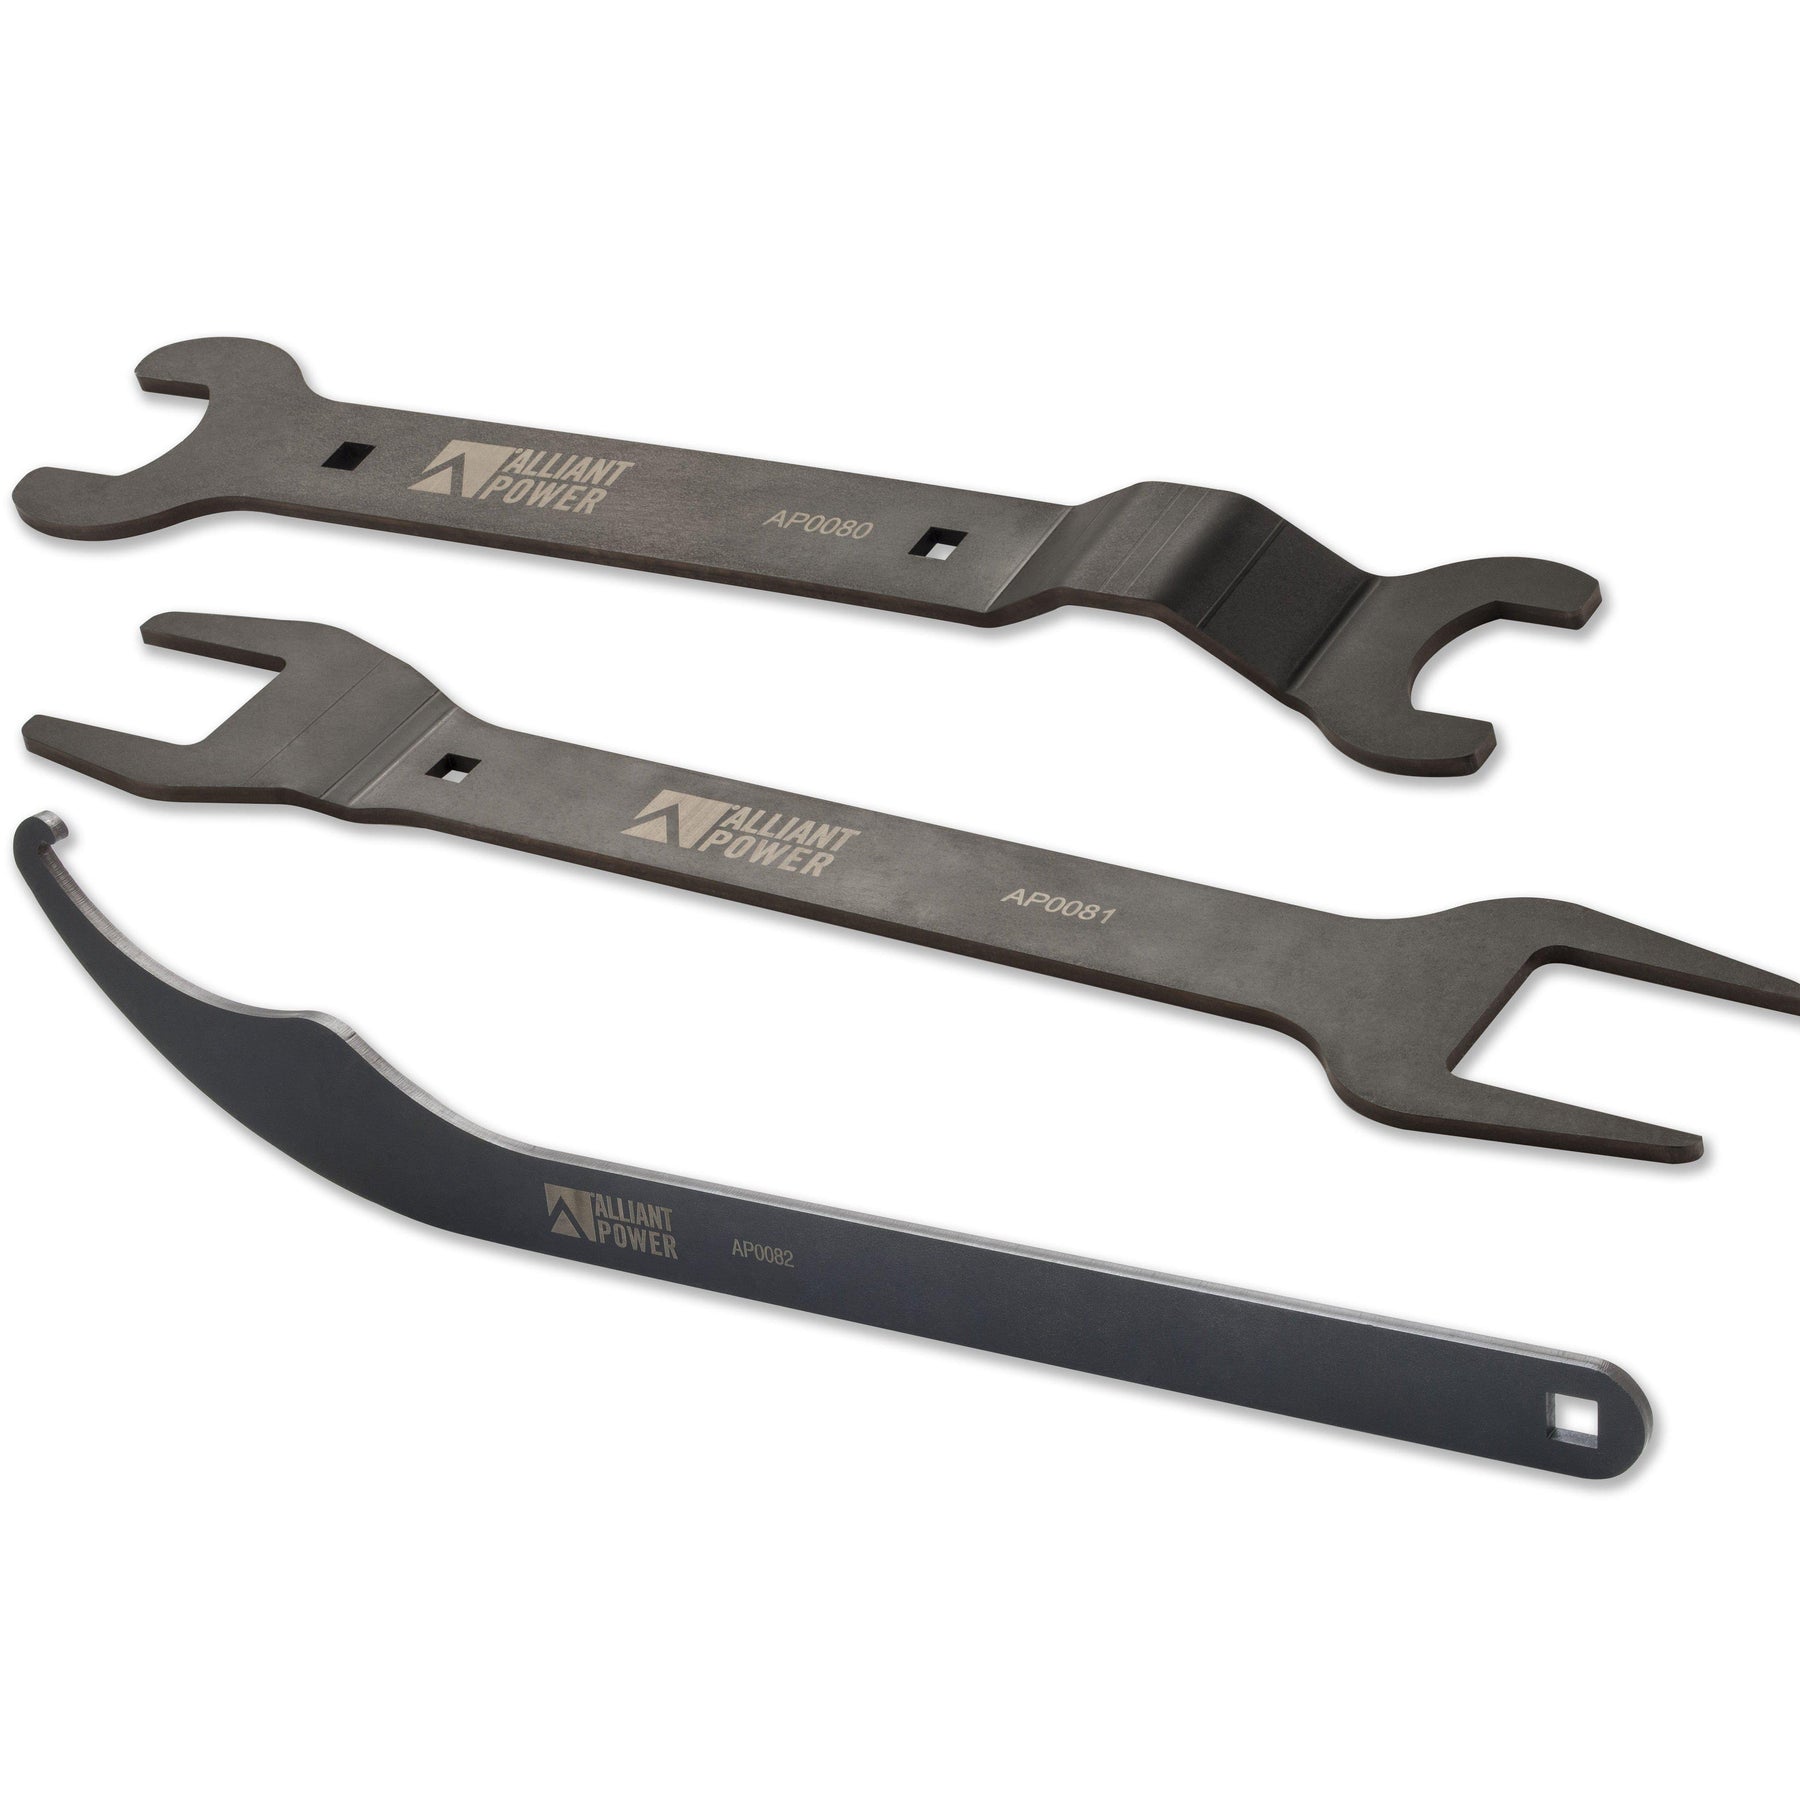 1994-2015 Powerstroke Fan Clutch Wrench Kit (AP0089)-Tools-Alliant Power-AP0089-Dirty Diesel Customs